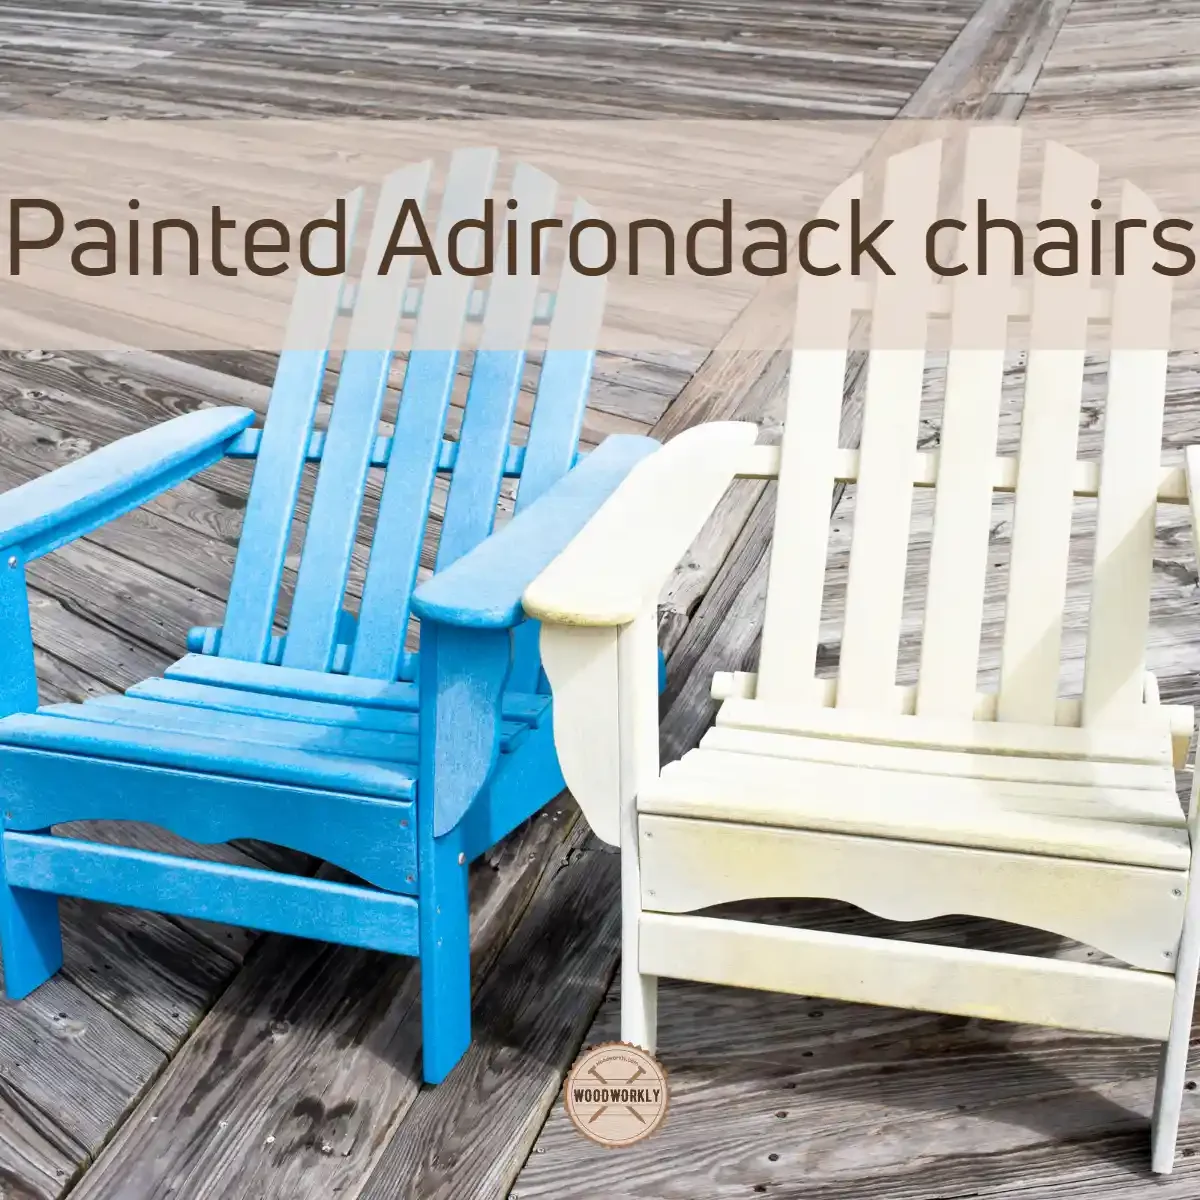 Painted Adirondack chairs